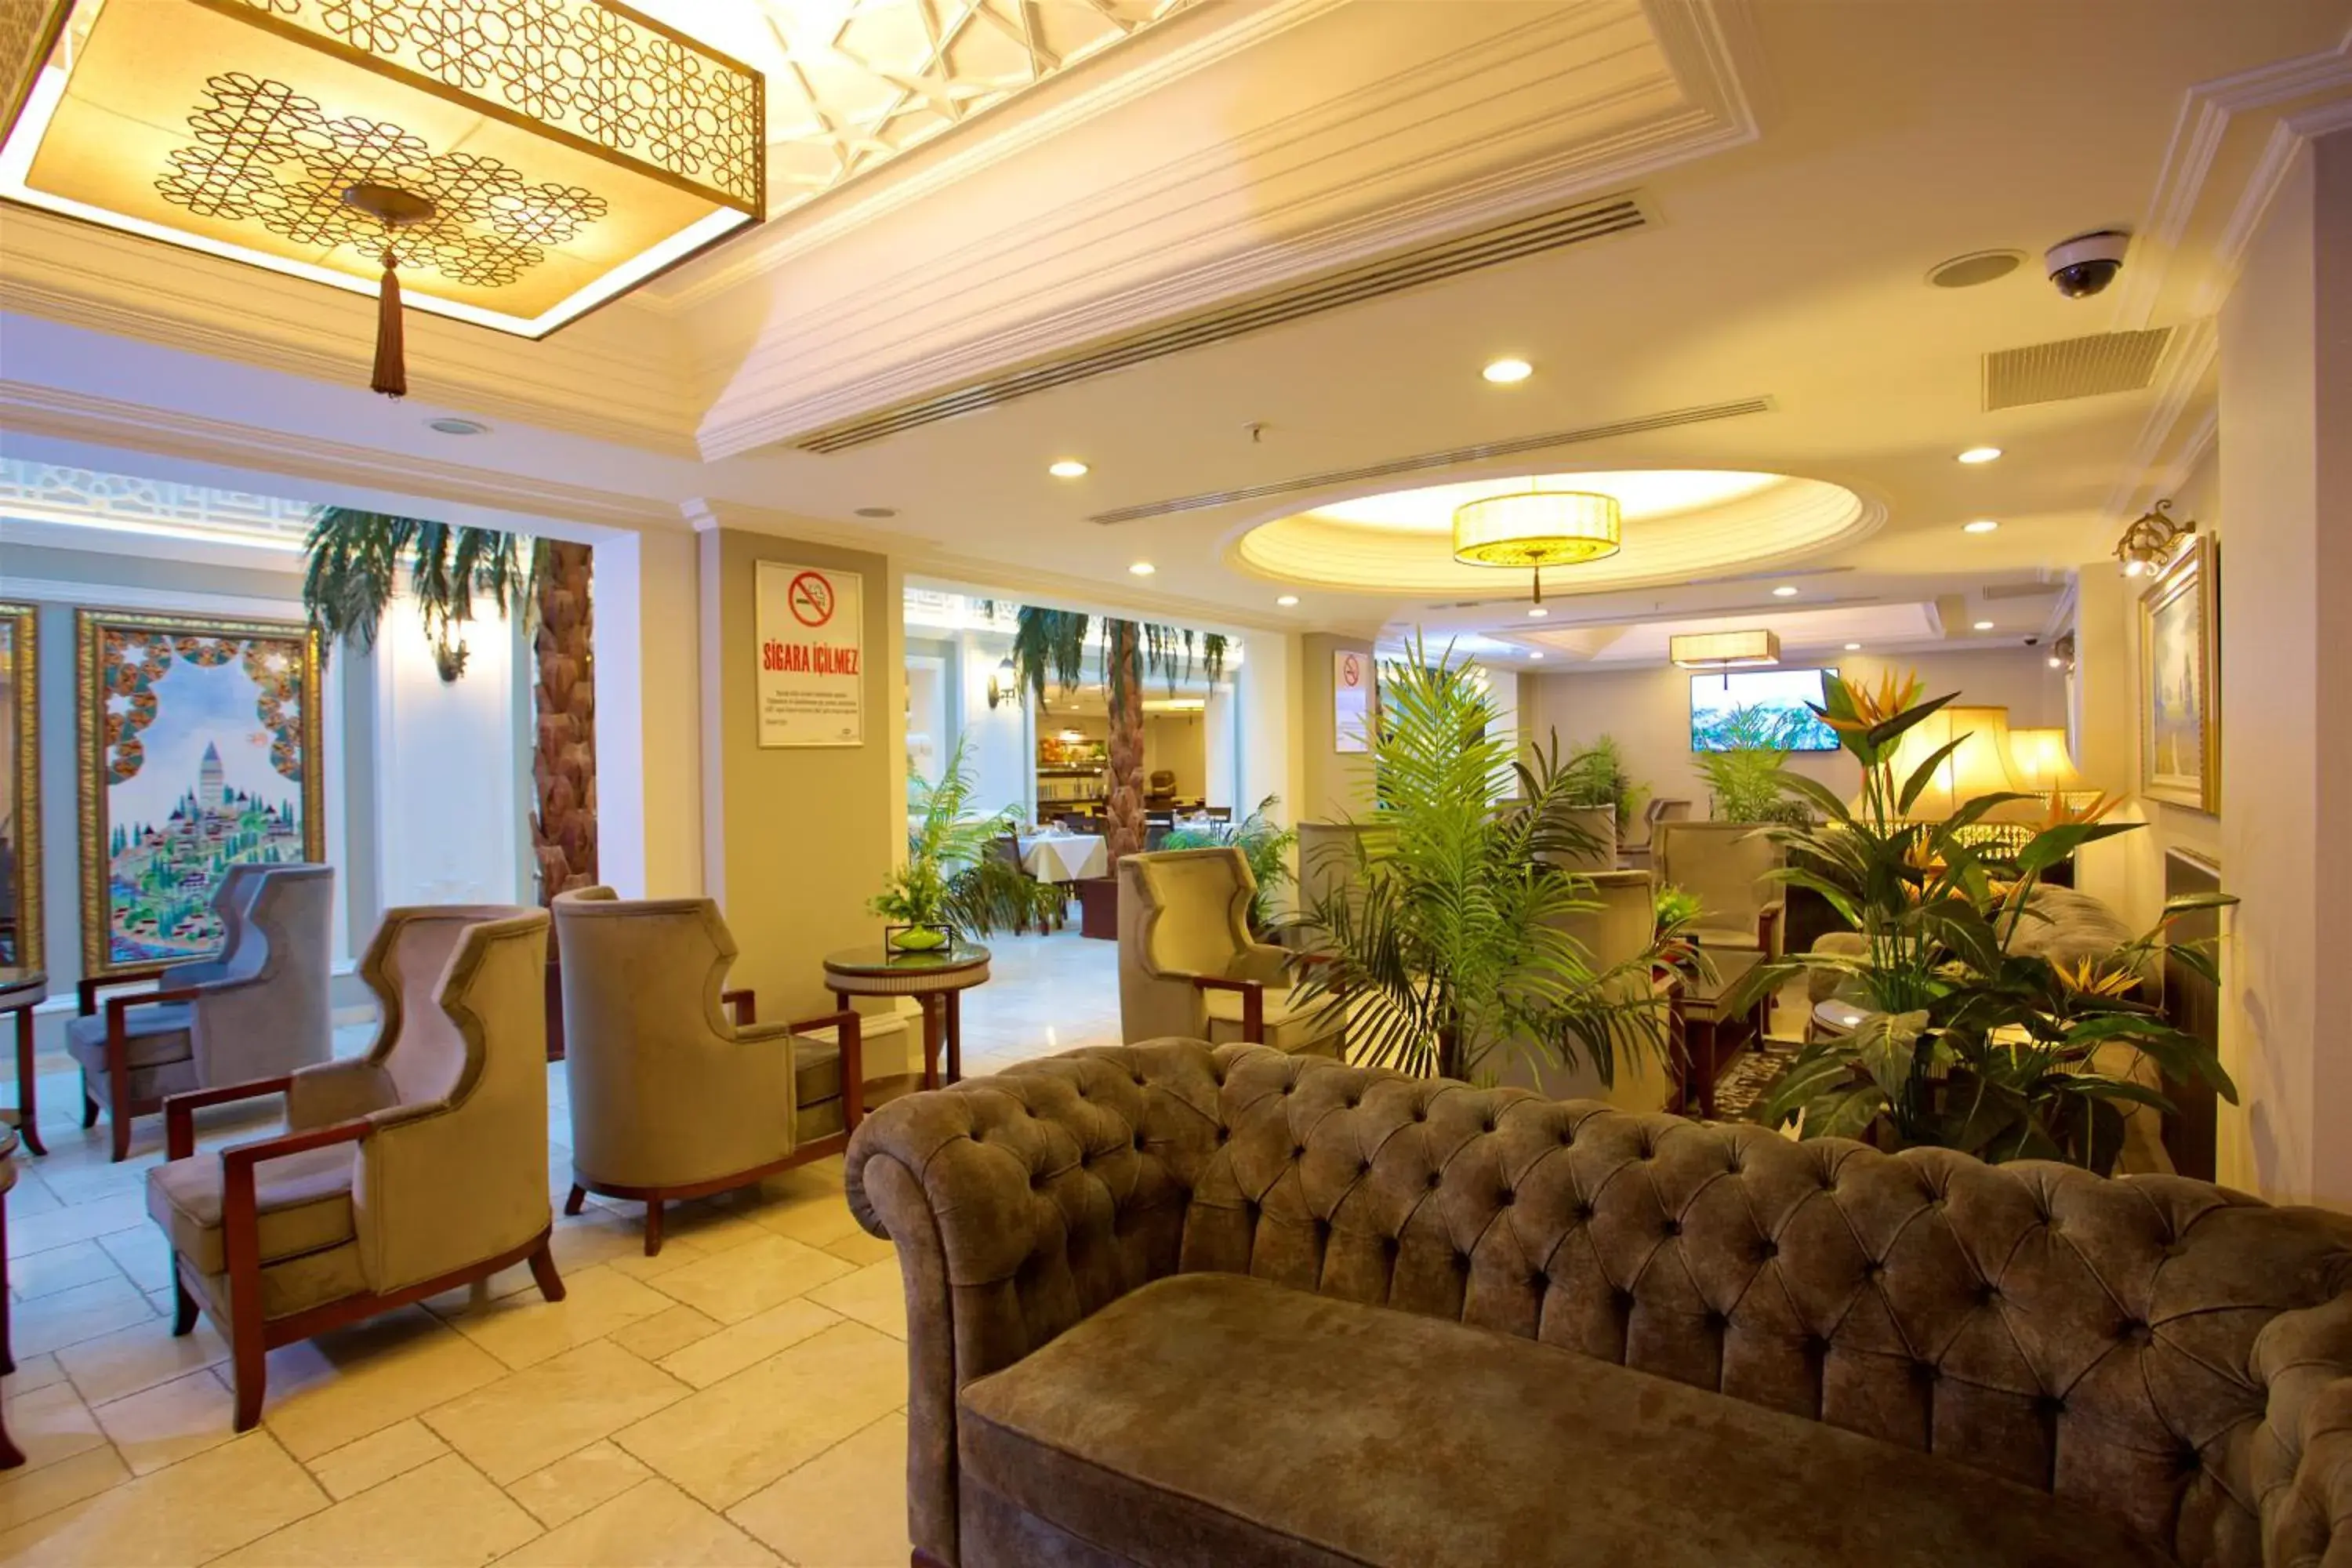 Seating area, Lobby/Reception in Emporium Hotel